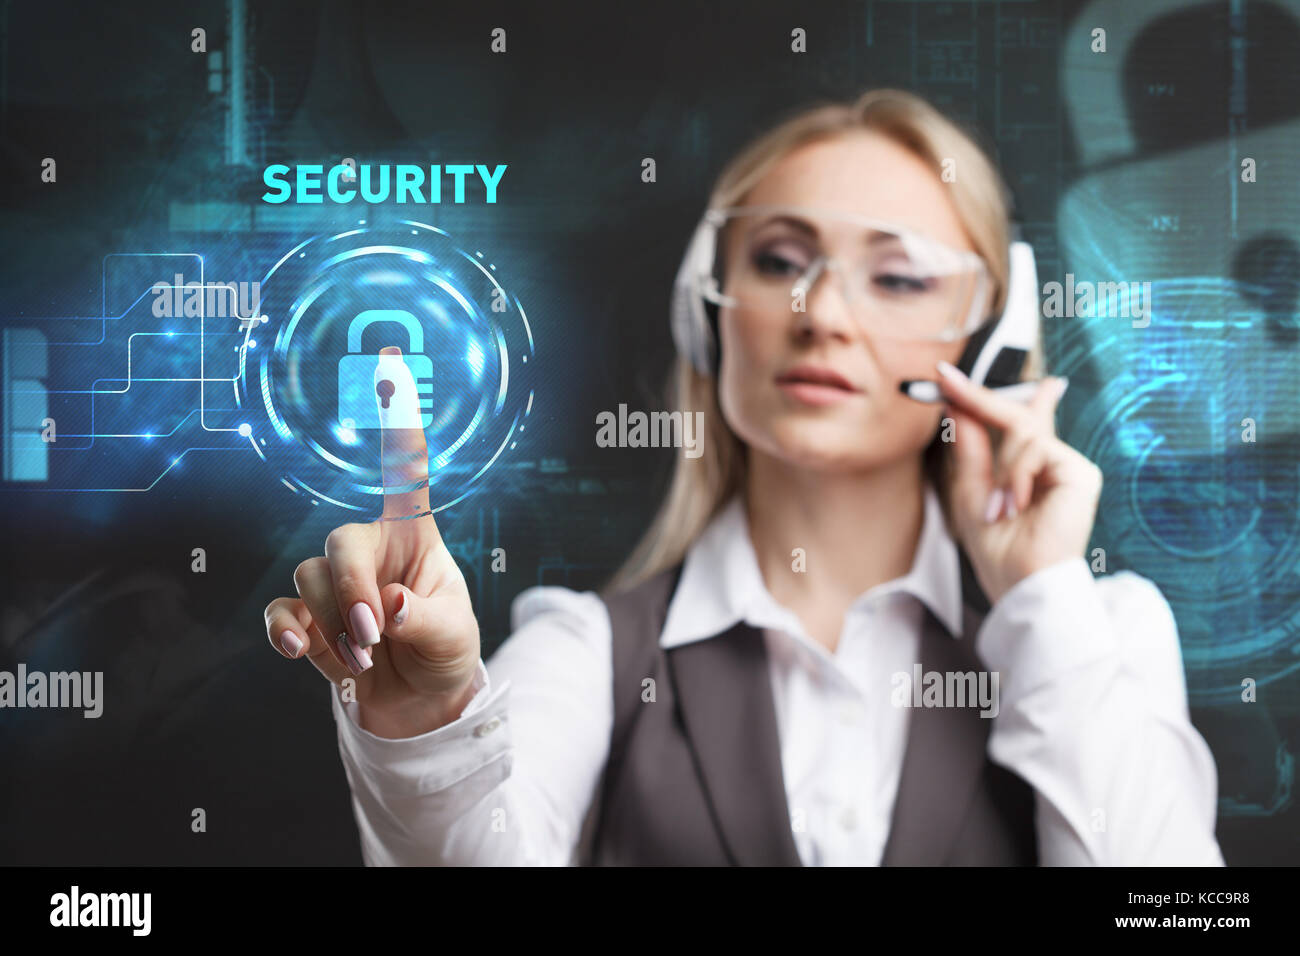 Young businesswoman working in lunettes virtuelle, sélectionnez l'icône d'affichage virtuel sur la sécurité Banque D'Images